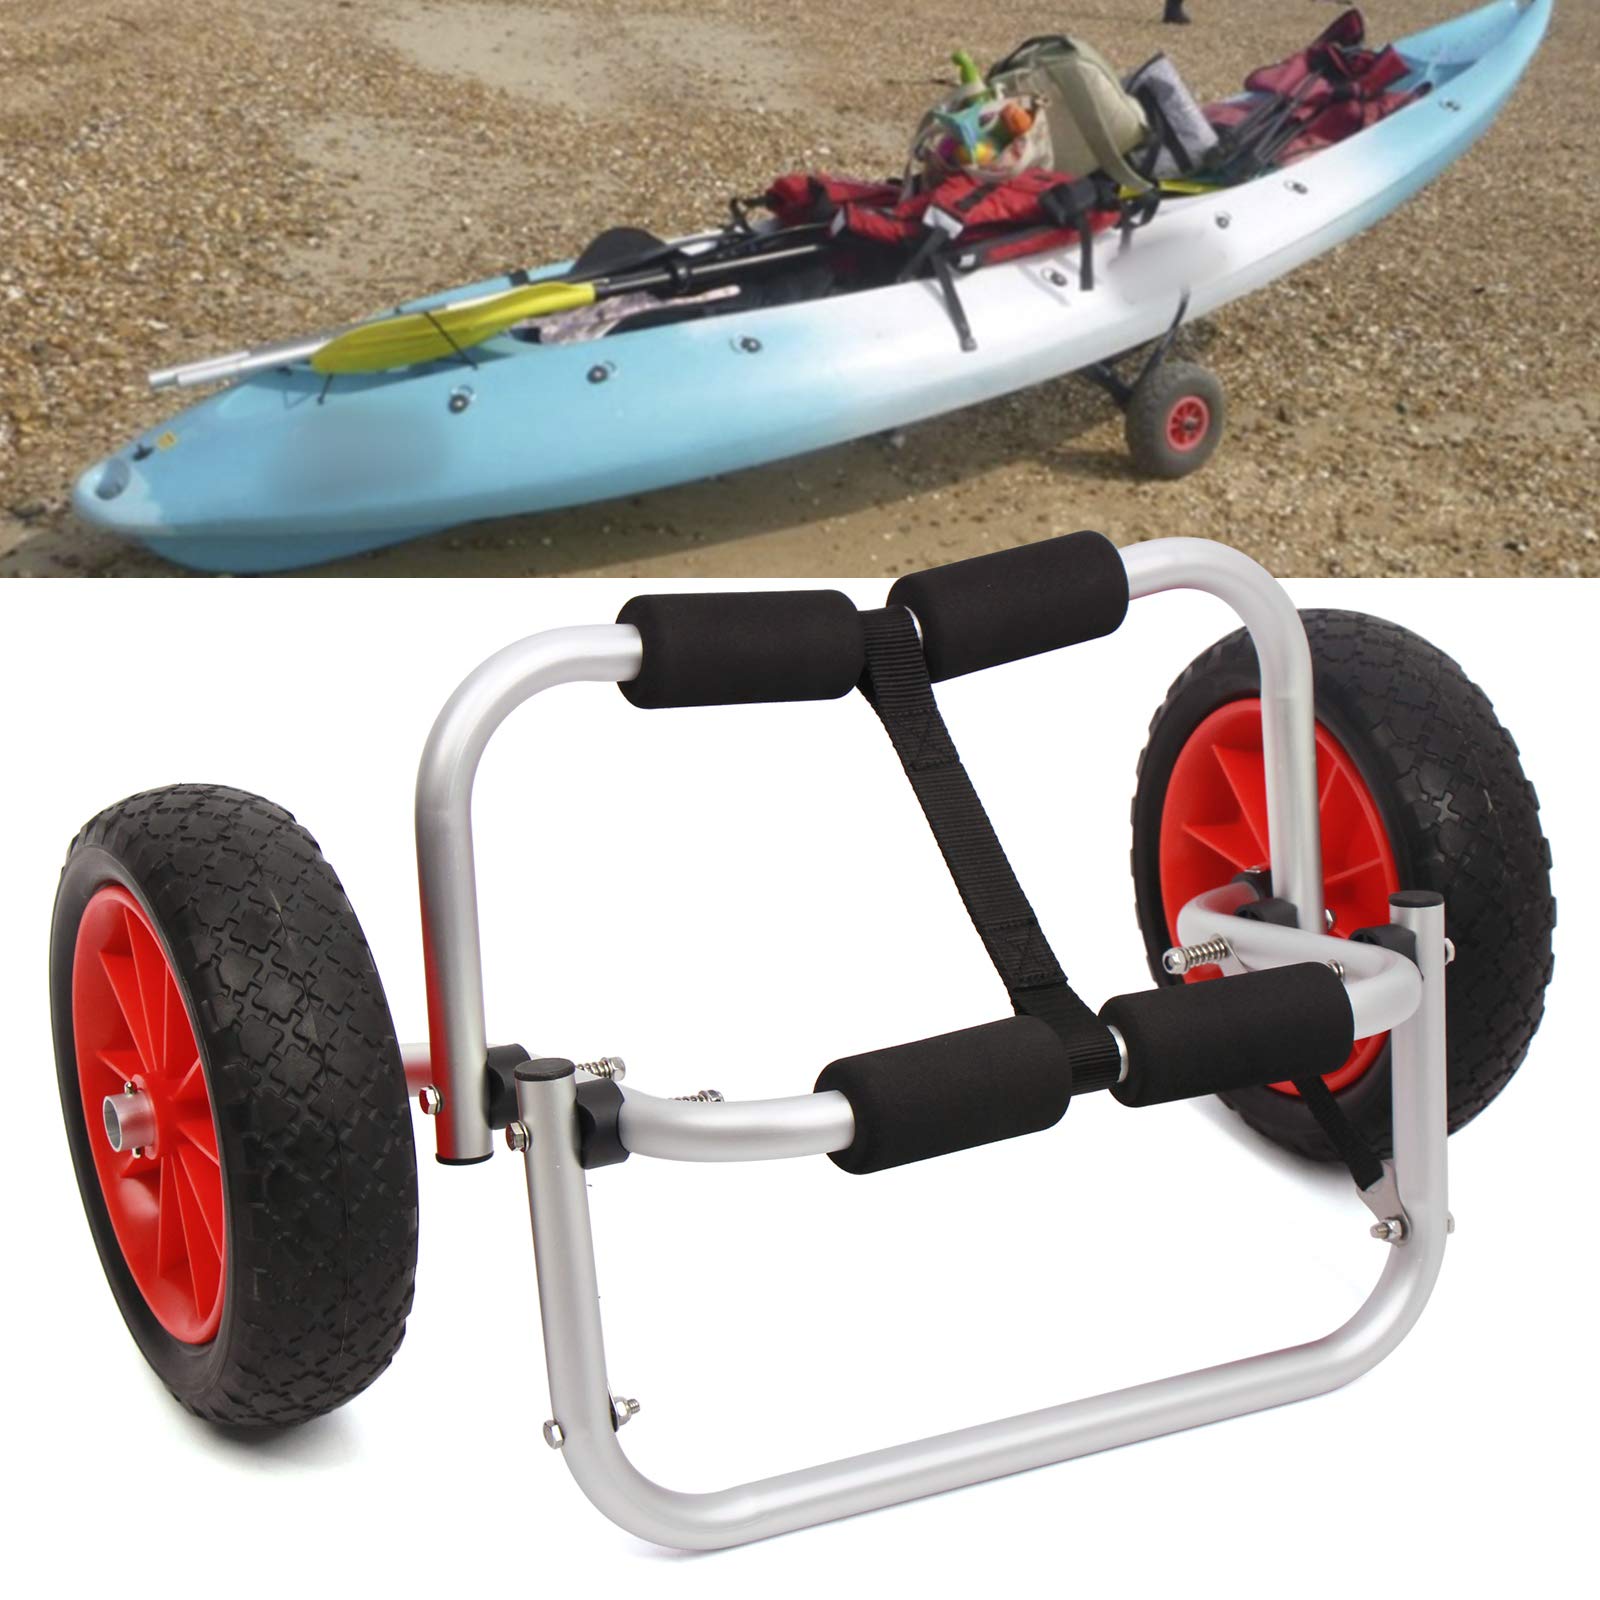 Carrello pieghevole per kayak, carrello di trasporto per canoa, in alluminio, ruote in gomma piena, con cinghie di tensione 150 LBS